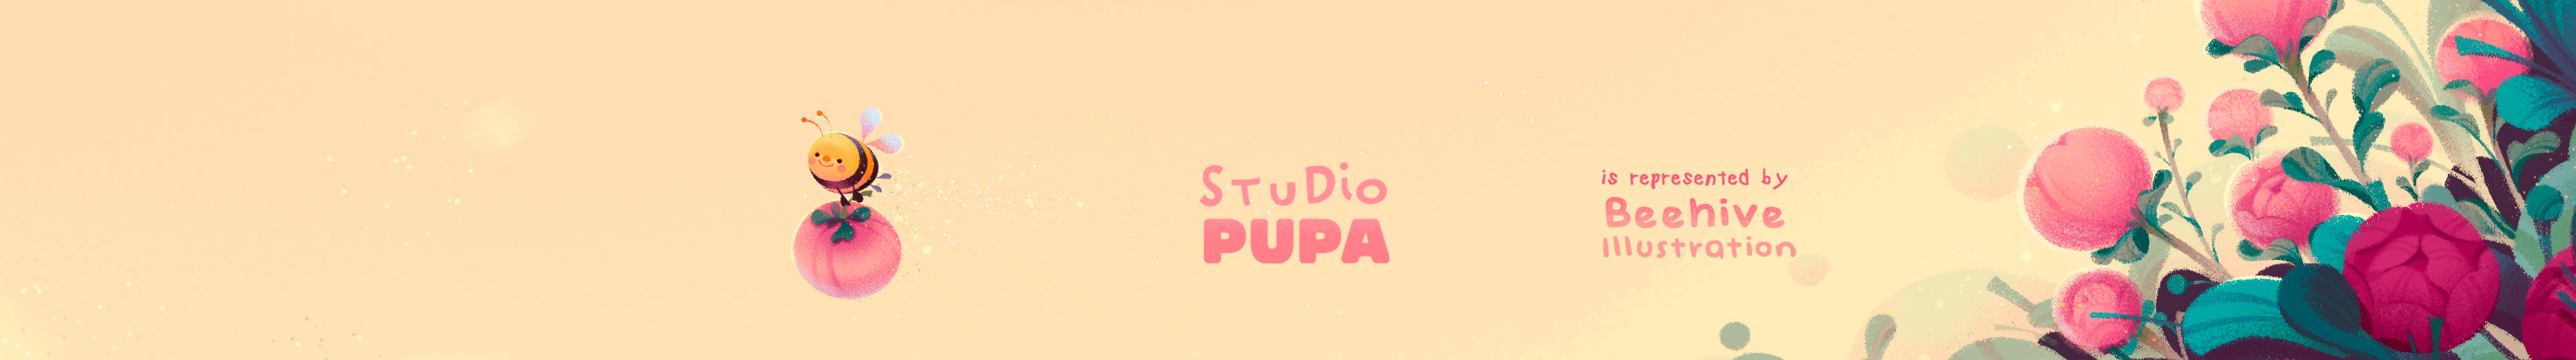 STUDIO PUPA's profile banner